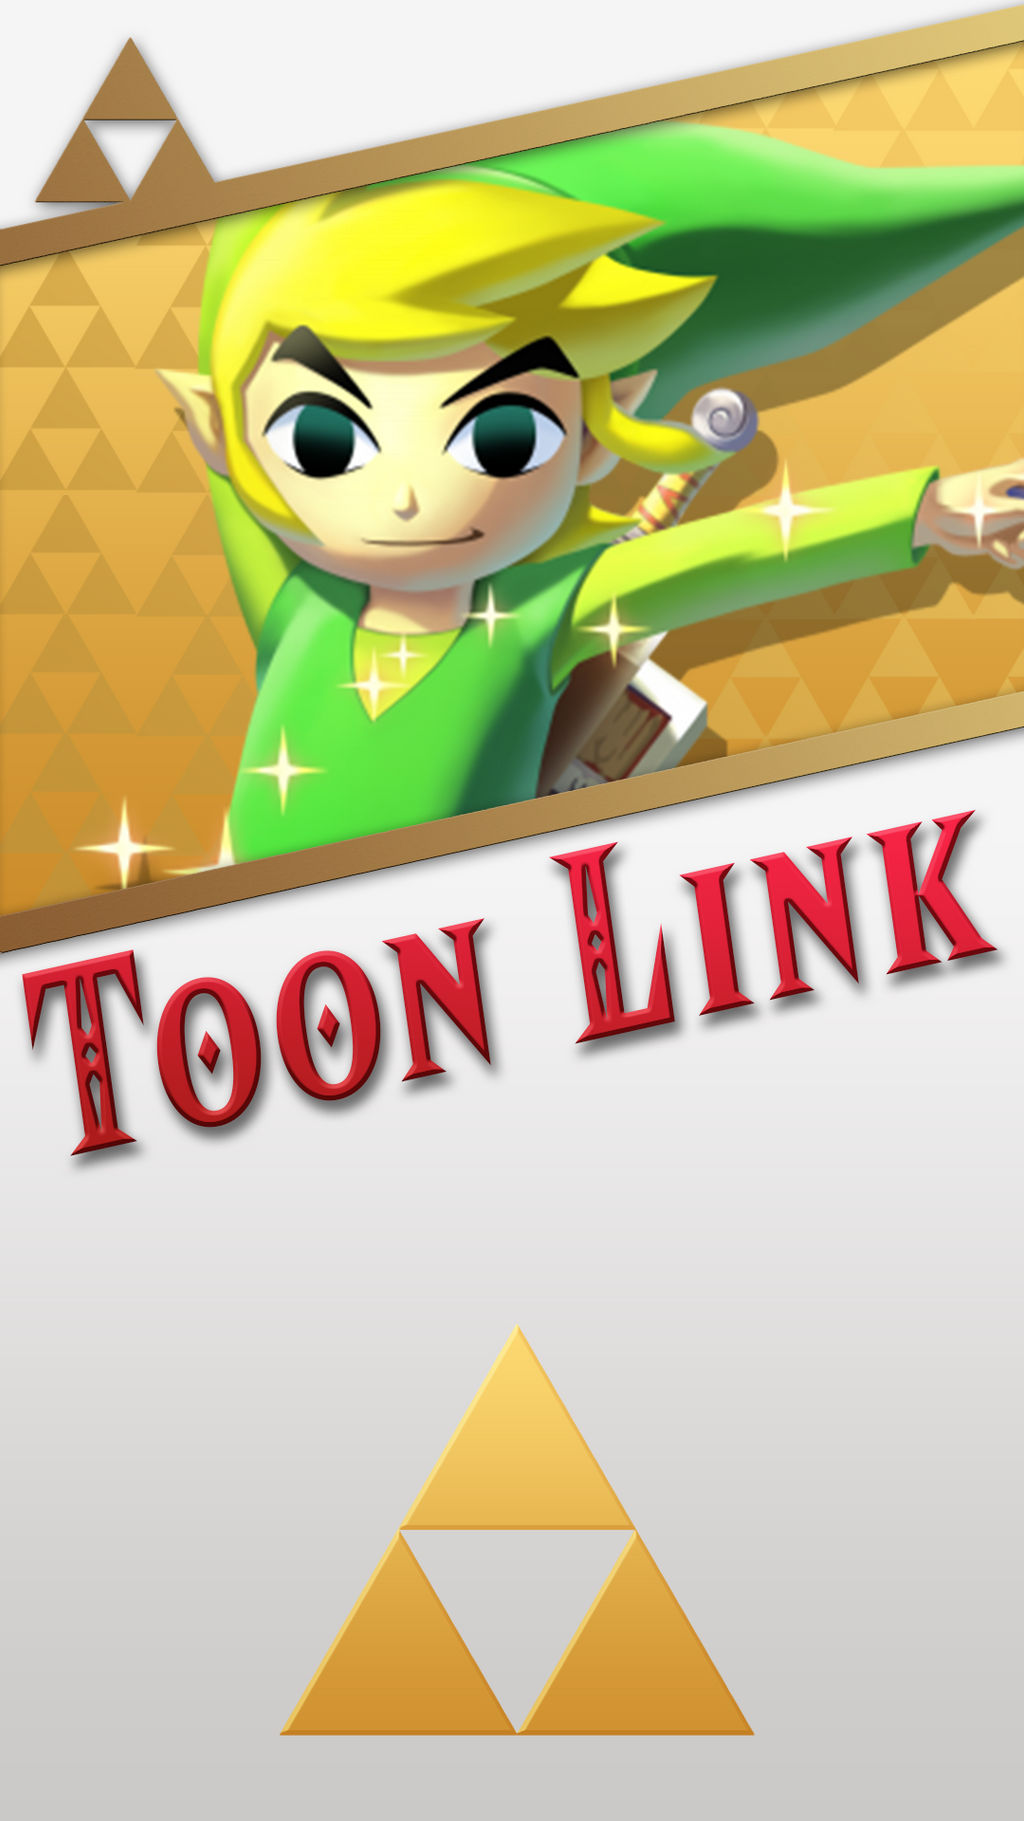 Toon Link Wallpaper Phone : The Legend Of Zelda The Wind Waker Toon